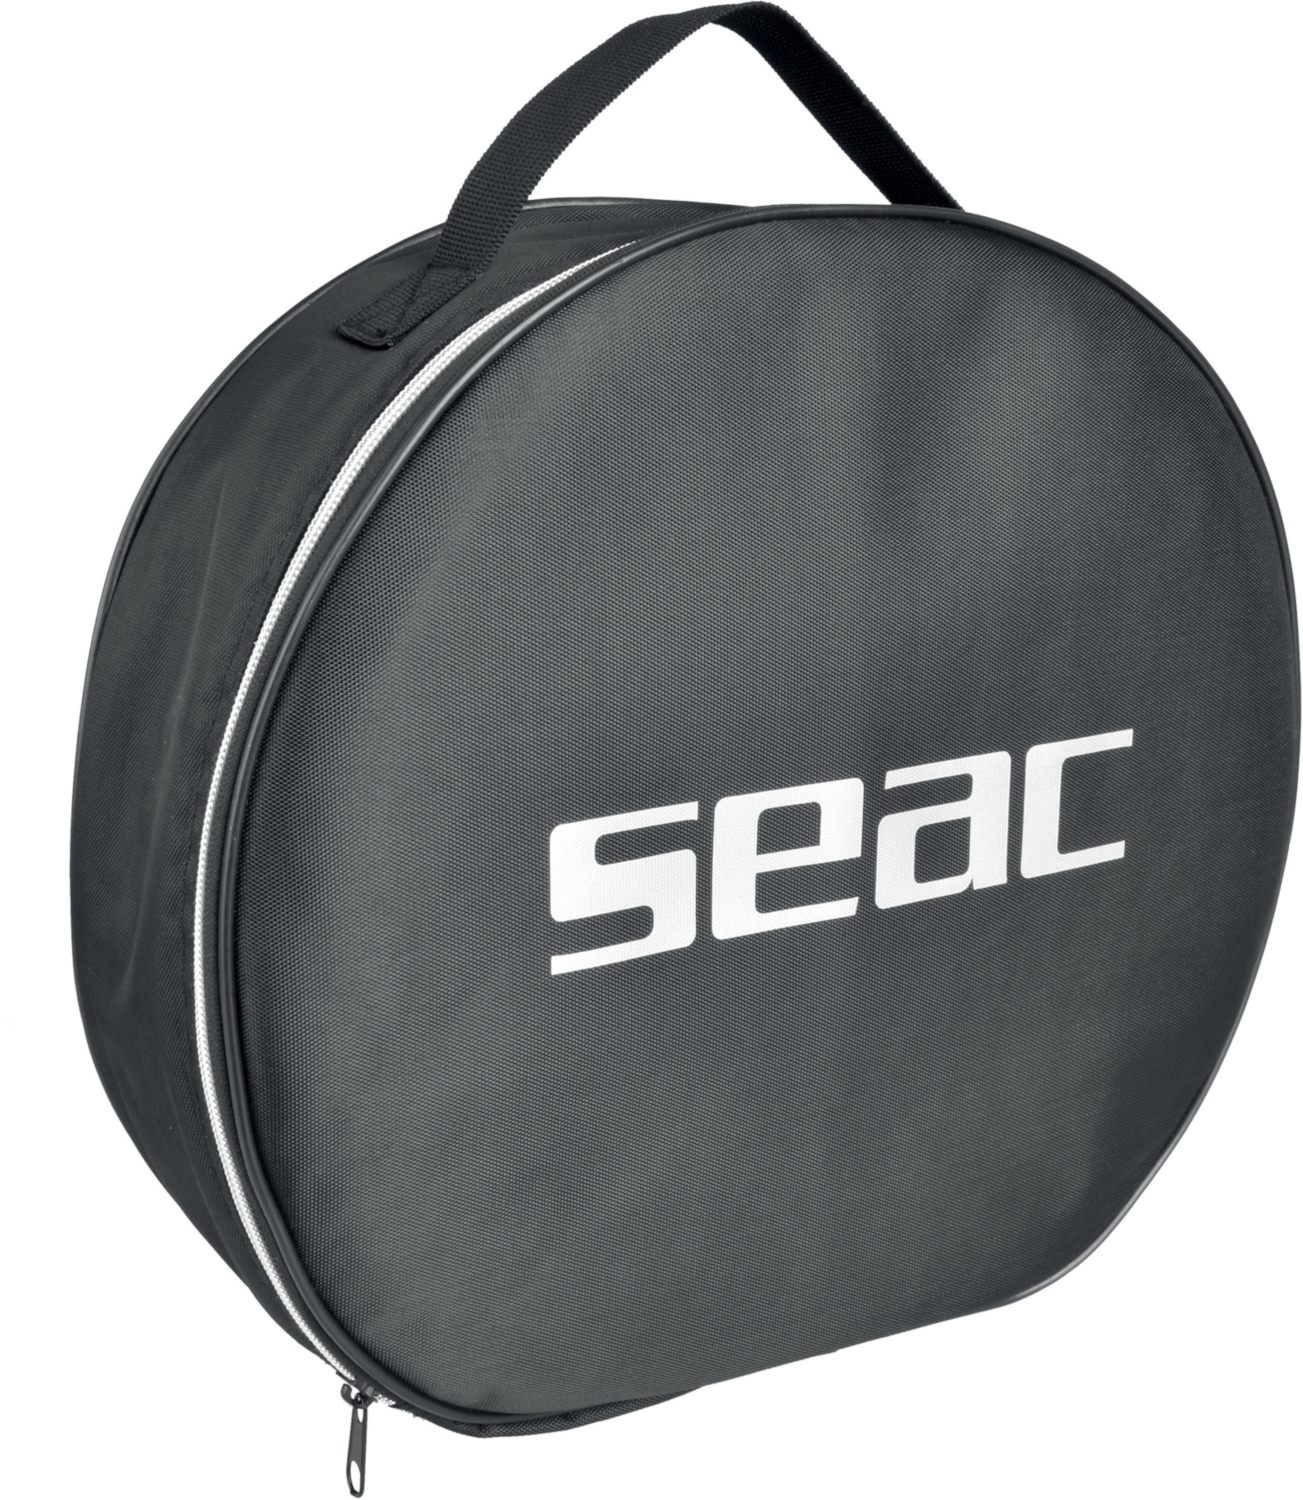 SEAC Mate Regulator Bag